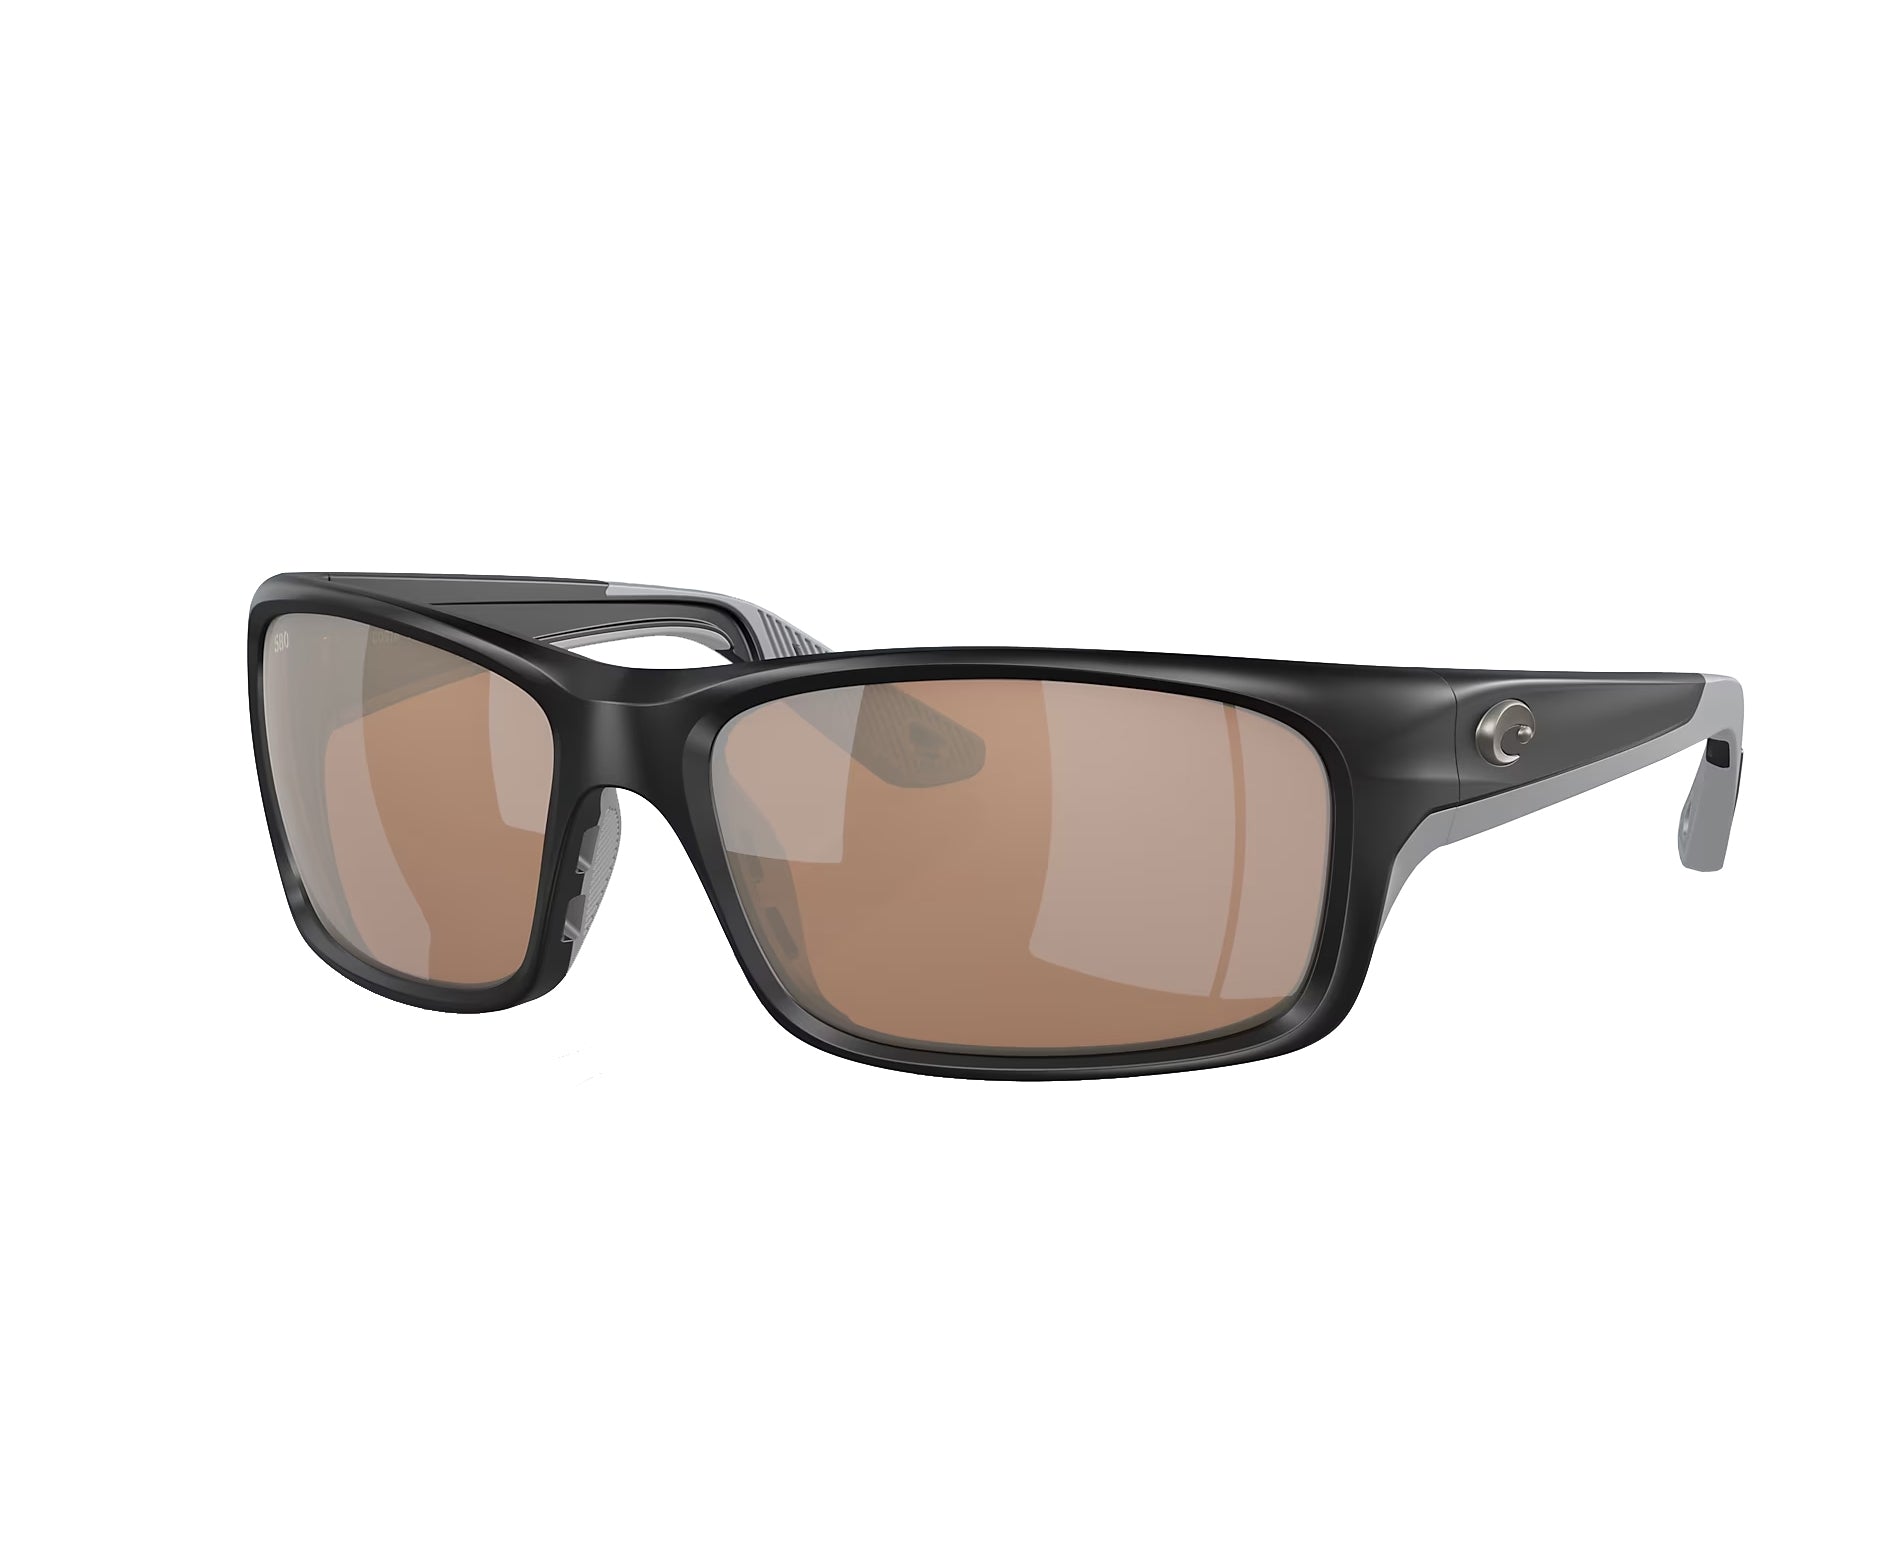 Costa Del Mar Jose Pro Polarized Sunglasses SilverMetalic CopperSilverMirror580G